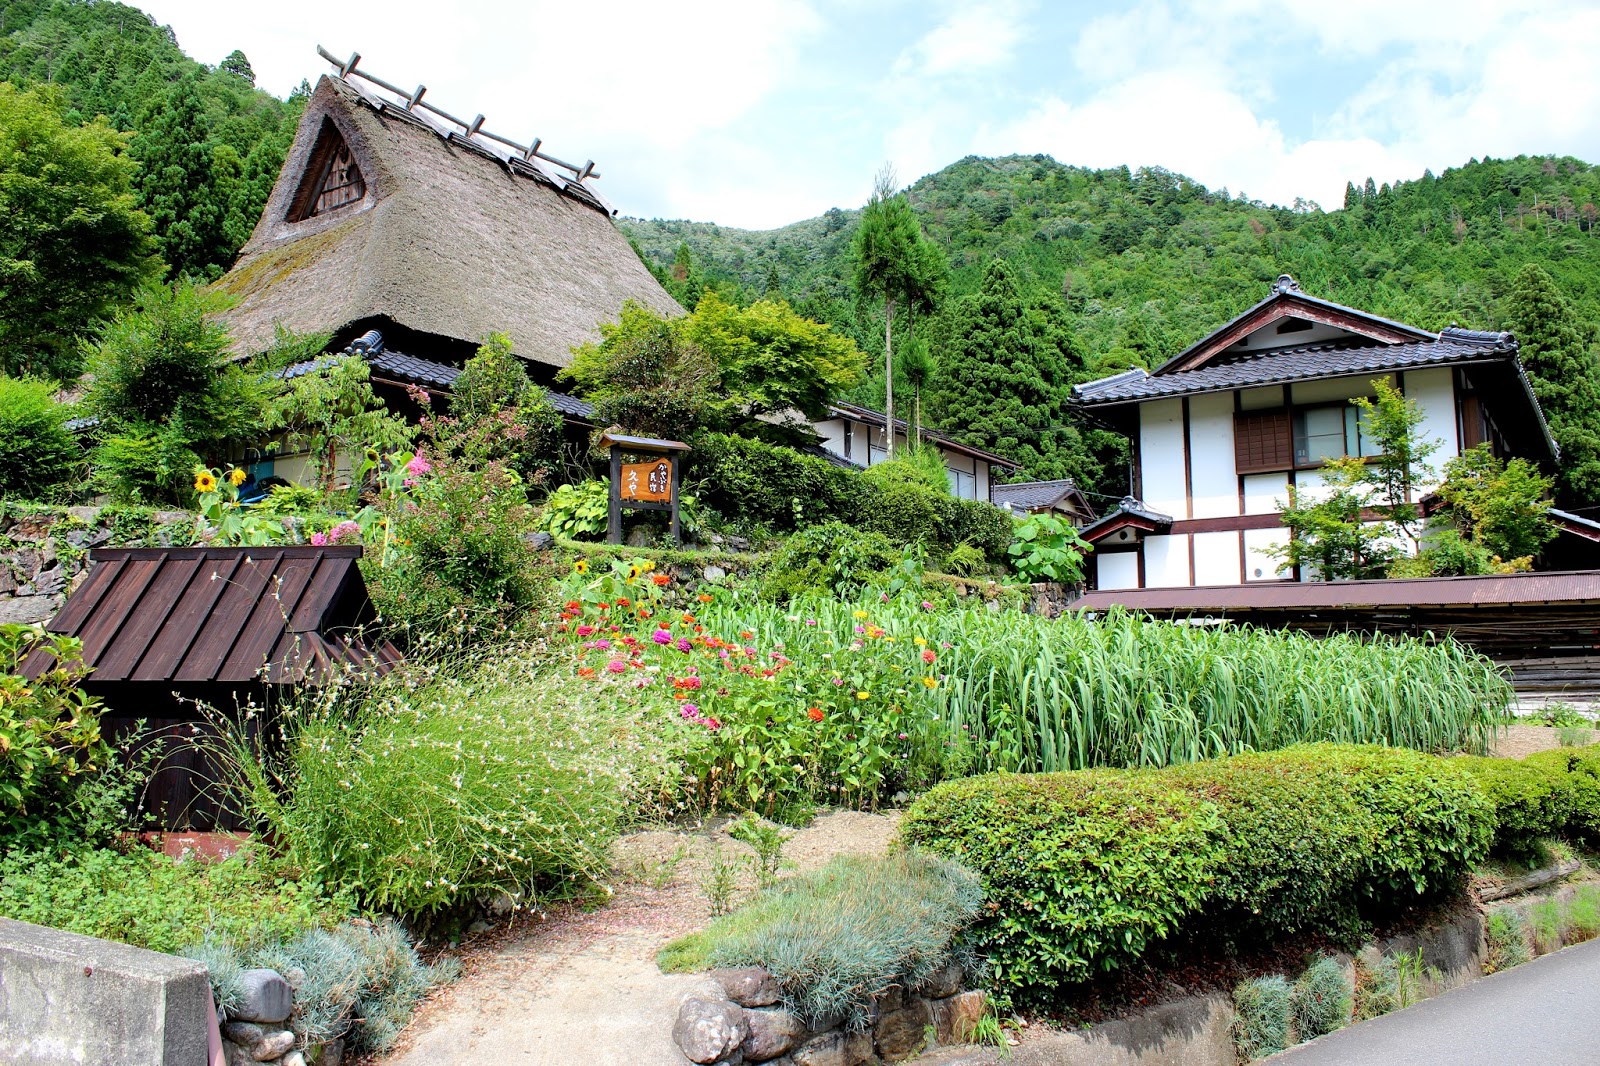 Japanese village. Деревня Каябуки-но Сато Япония. Минсюку японская деревня. Мияма Киото. Деревня Киото.